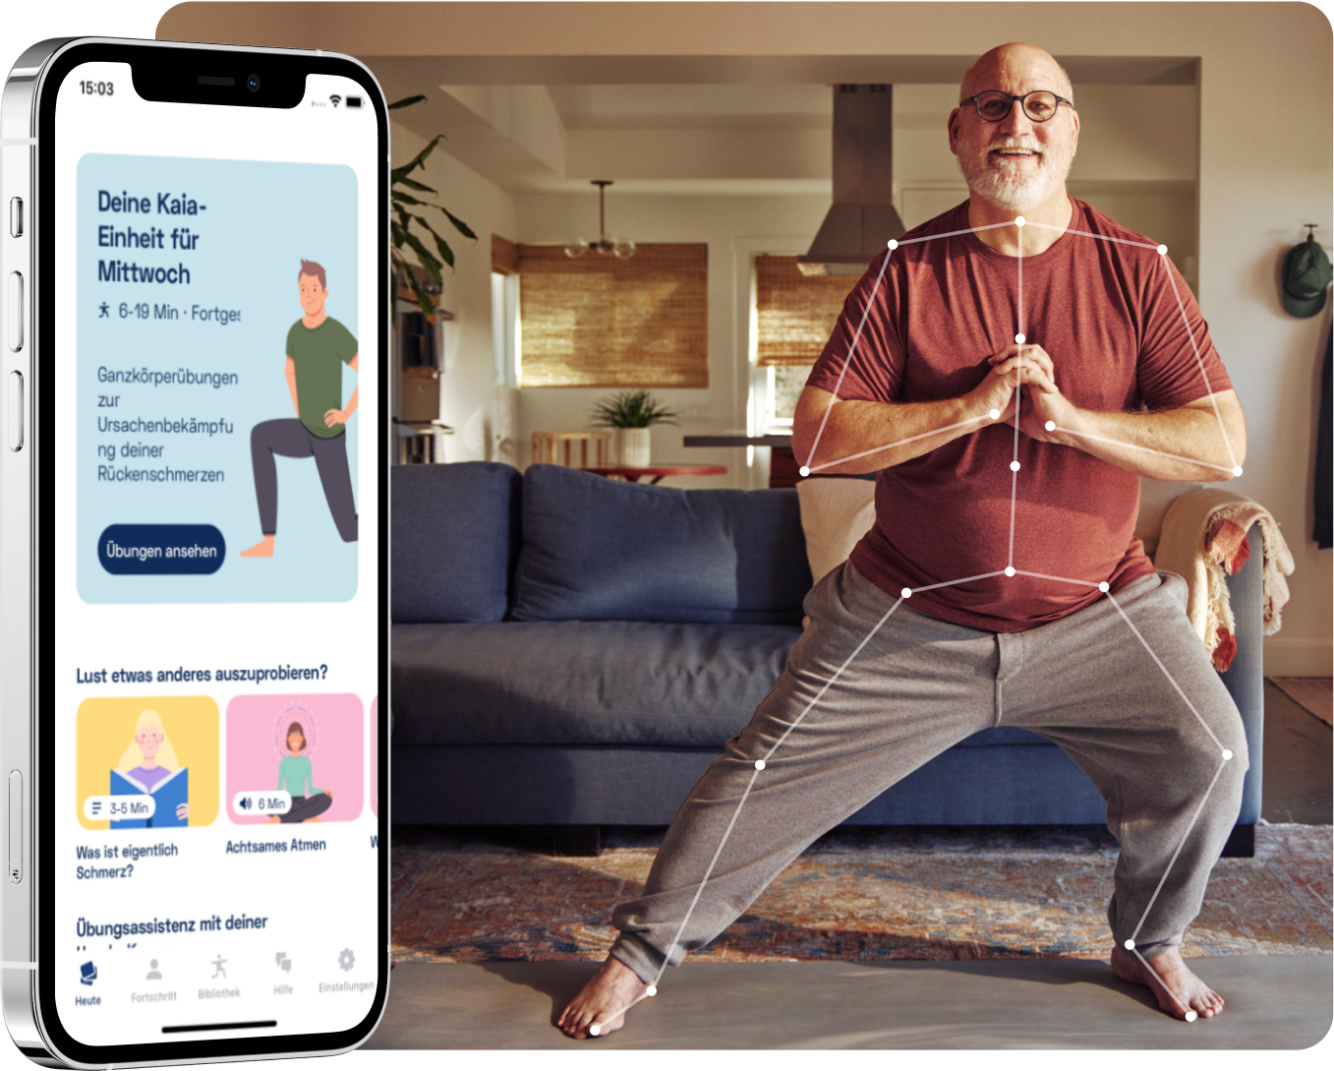 Darstellung der Kaia Rückenschmerzen App. Das Bild zeigt das Smartphone mit dem täglichen Therapieprogramm von Kaia und einen Mann, der gerade trainiert in seinem Wohnzimmer.